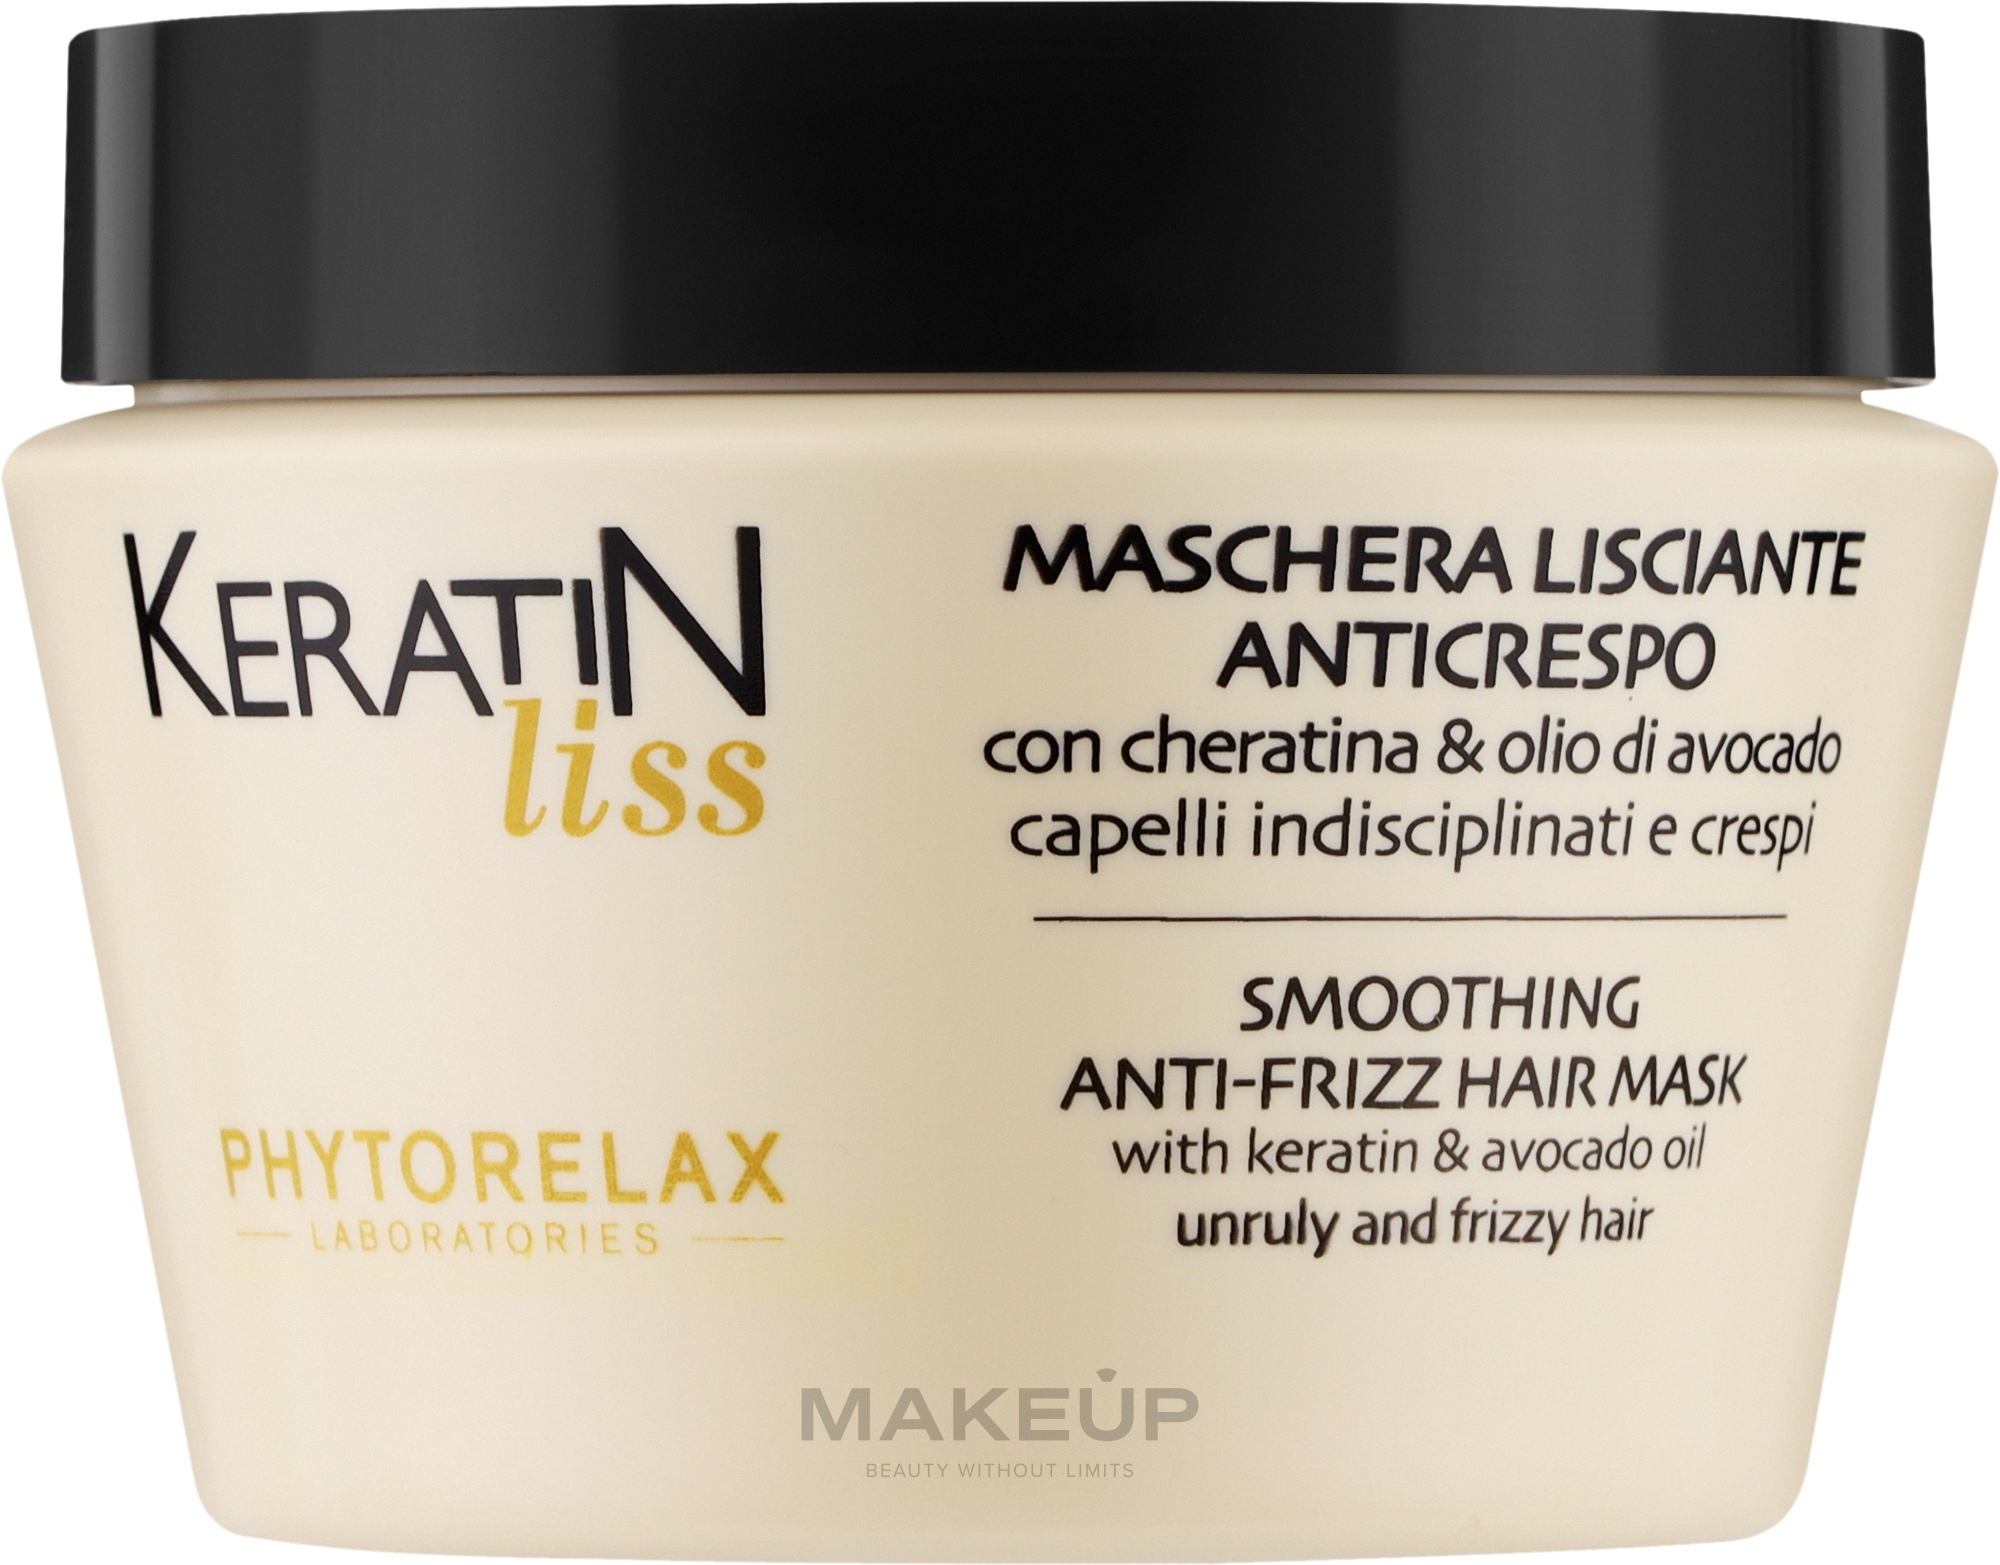 Маска для розгладження волосся - Phytorelax Laboratories Keratin Liss Smoothing Anti-Frizz Hair Mask — фото 250ml